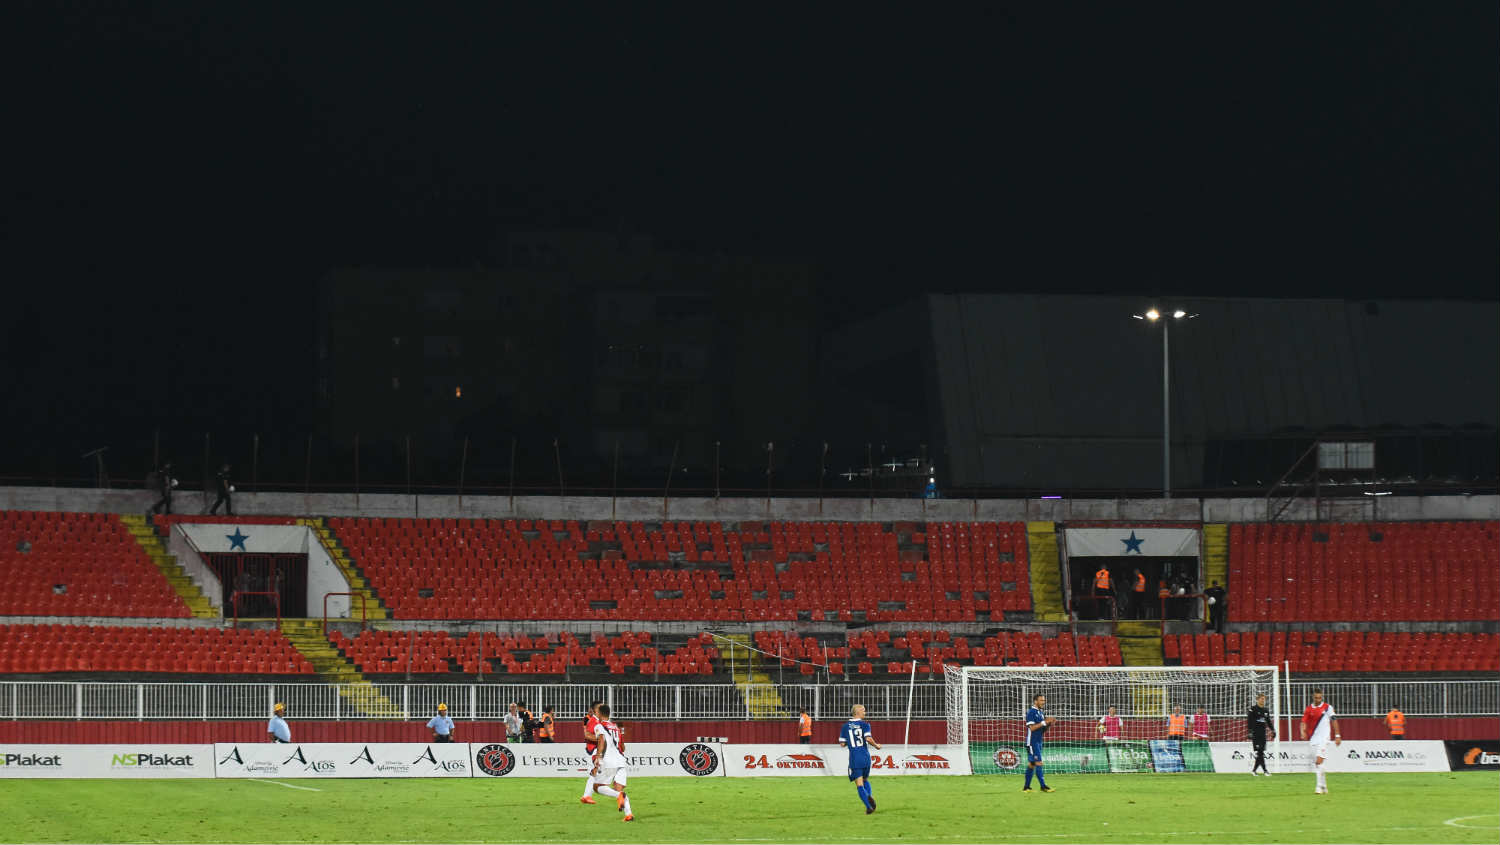 Zašto Srbijagas finansira izgradnju novog stadiona FK Vojvodina 1